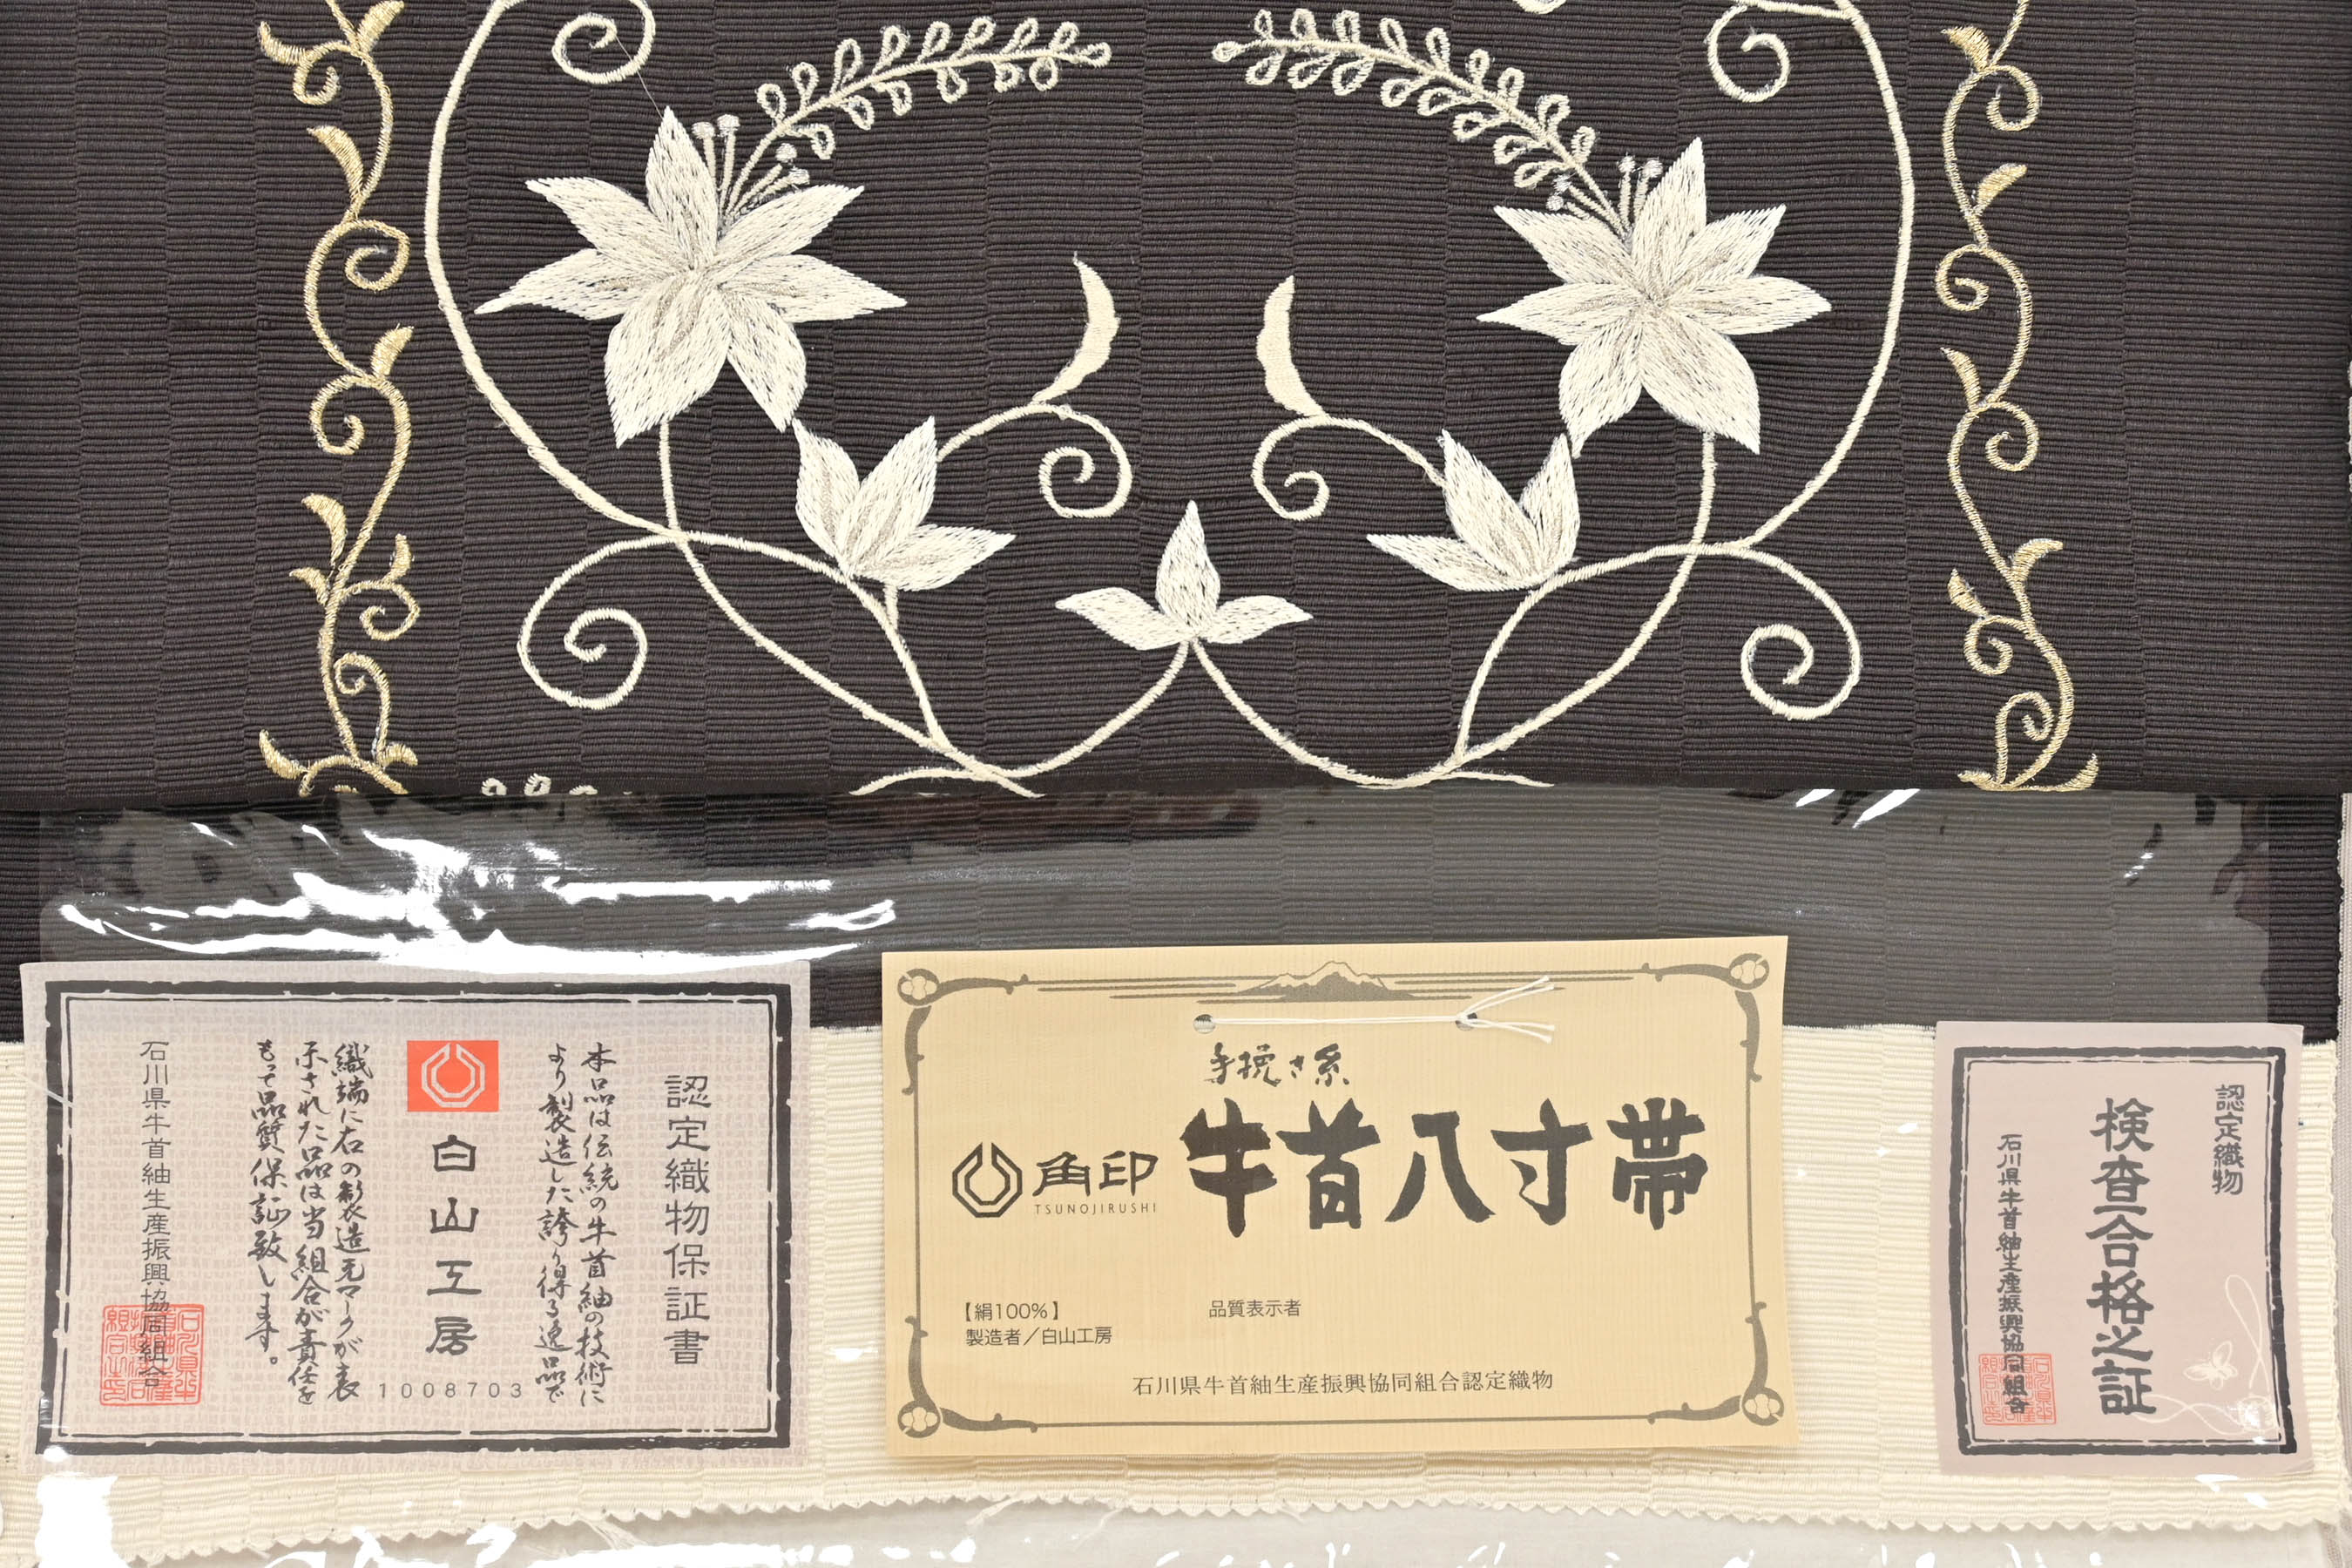 石川県指定無形文化財 本場牛首紬 白山工房 手織 証紙付 未使用 m-2s 最安値クラス